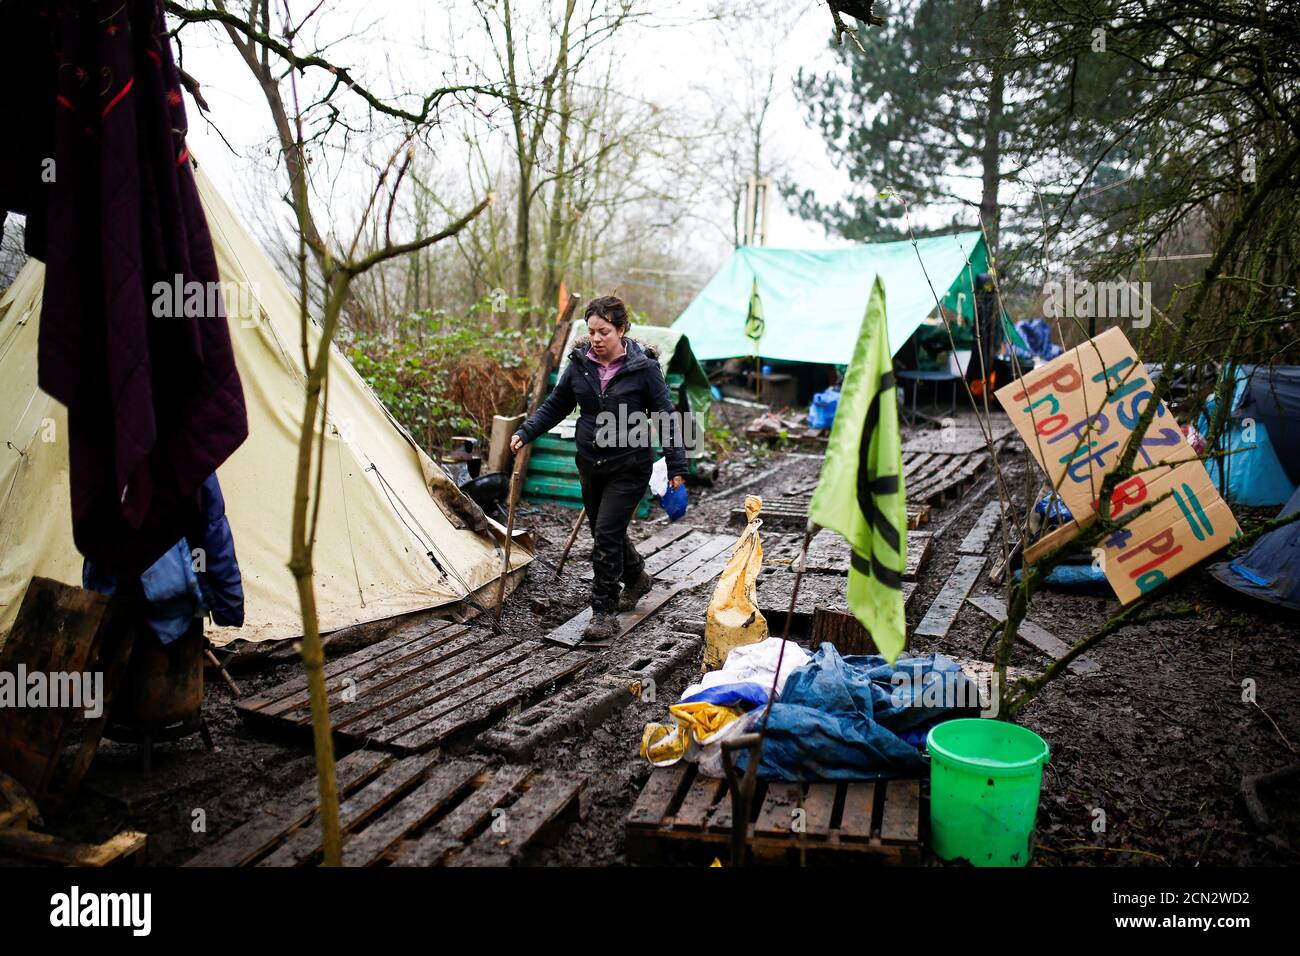 Un activista afiliado a la Rebelión de extinción camina por un campamento establecido para protestar contra la construcción del ferrocarril HS2 en Harefield, Gran Bretaña, el 22 de enero de 2020. REUTERS/Henry Nicholls Foto de stock